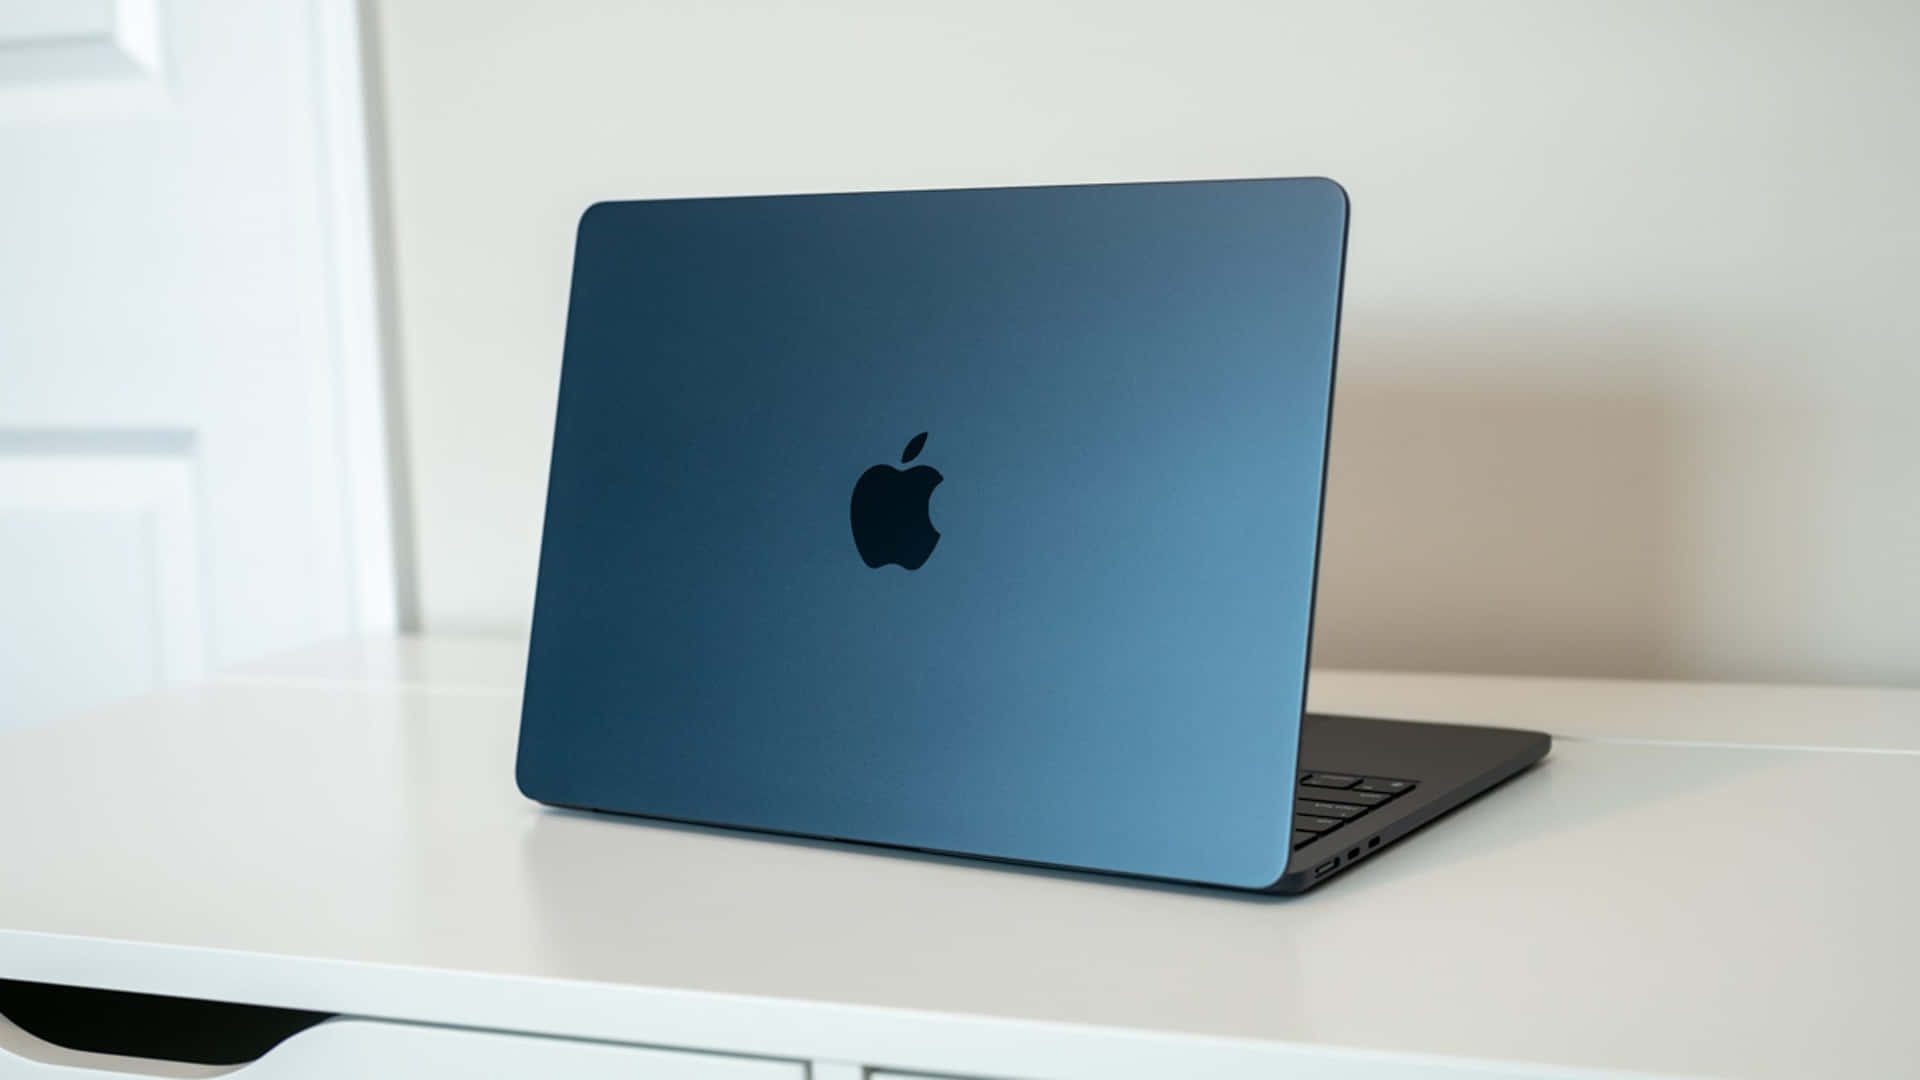 Nyd overlegen klarhed og skarpe farver fra Apple Macbook.